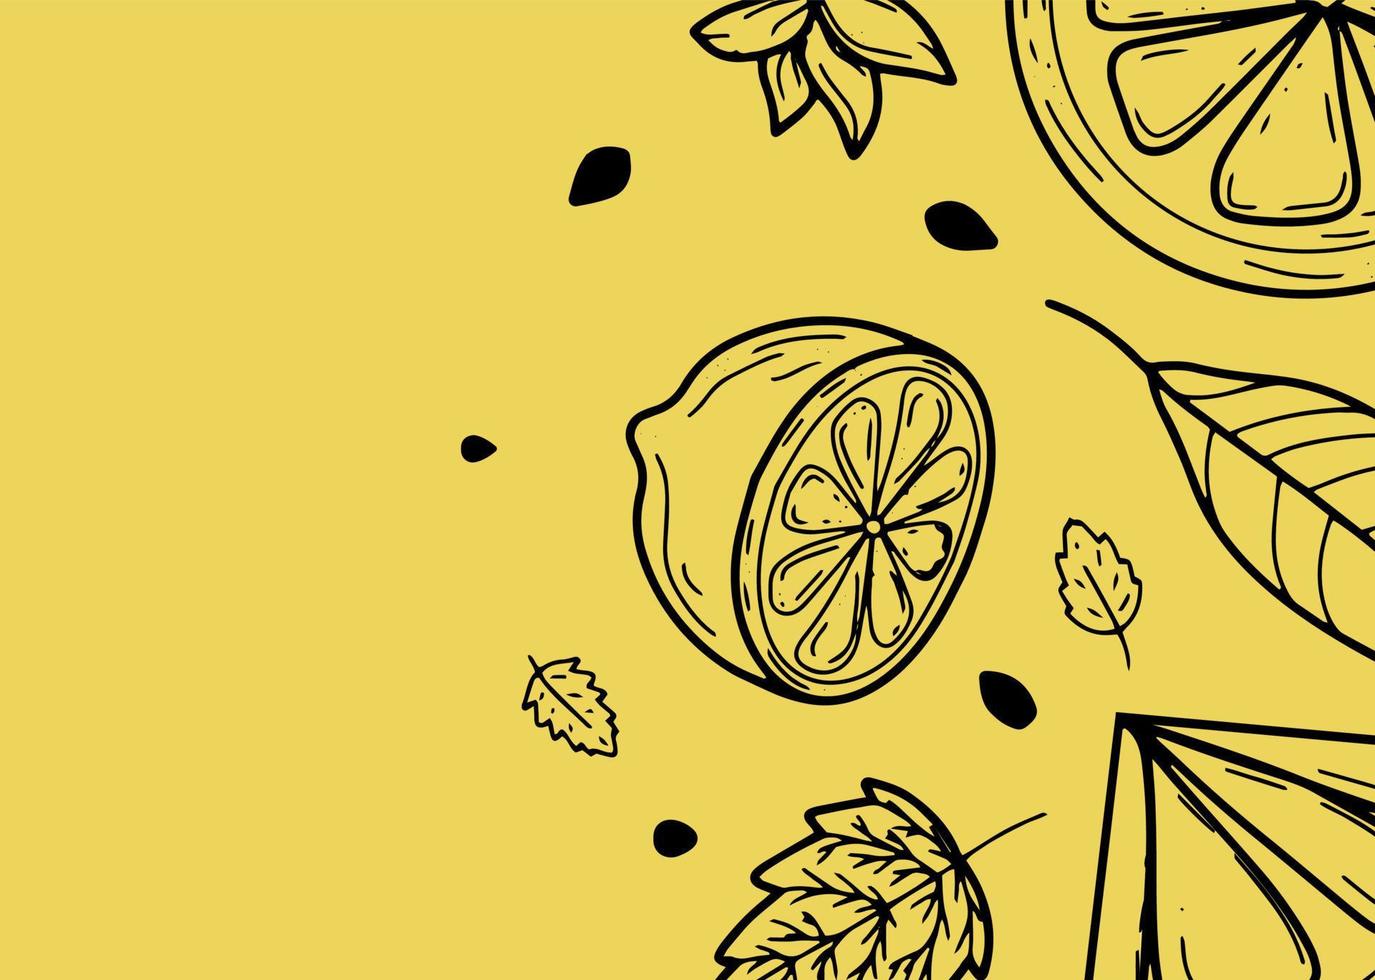 beau fond avec des citrons, des fleurs, des congés. illustration vectorielle dessinée à la main de fruits. bannière dans le style de la gravure. agrumes vintage et design botanique. pour affiche, impressions, papier peint, couvertures vecteur